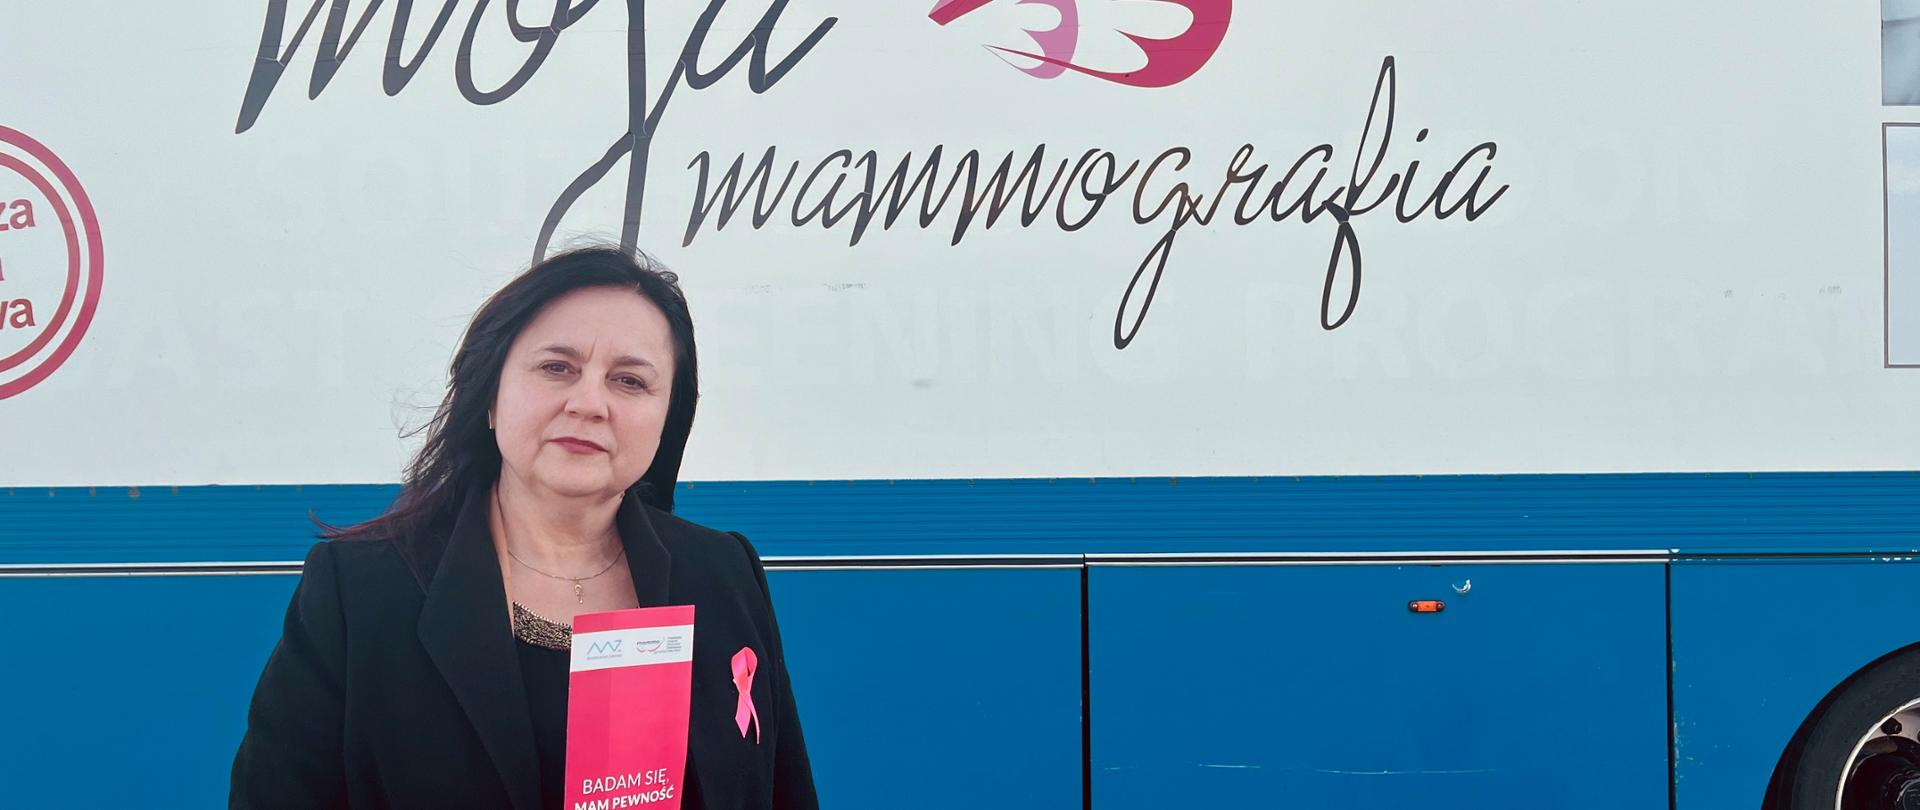 Państwowy Powiatowy Inspektor Sanitarny w Sochaczewie Beata Fergińska promuje badania profilaktyczne piersi. Trzyma w ręku ulotkę, a do płaszcza przypiętą ma różową wstążeczkę. W tle mammobus.